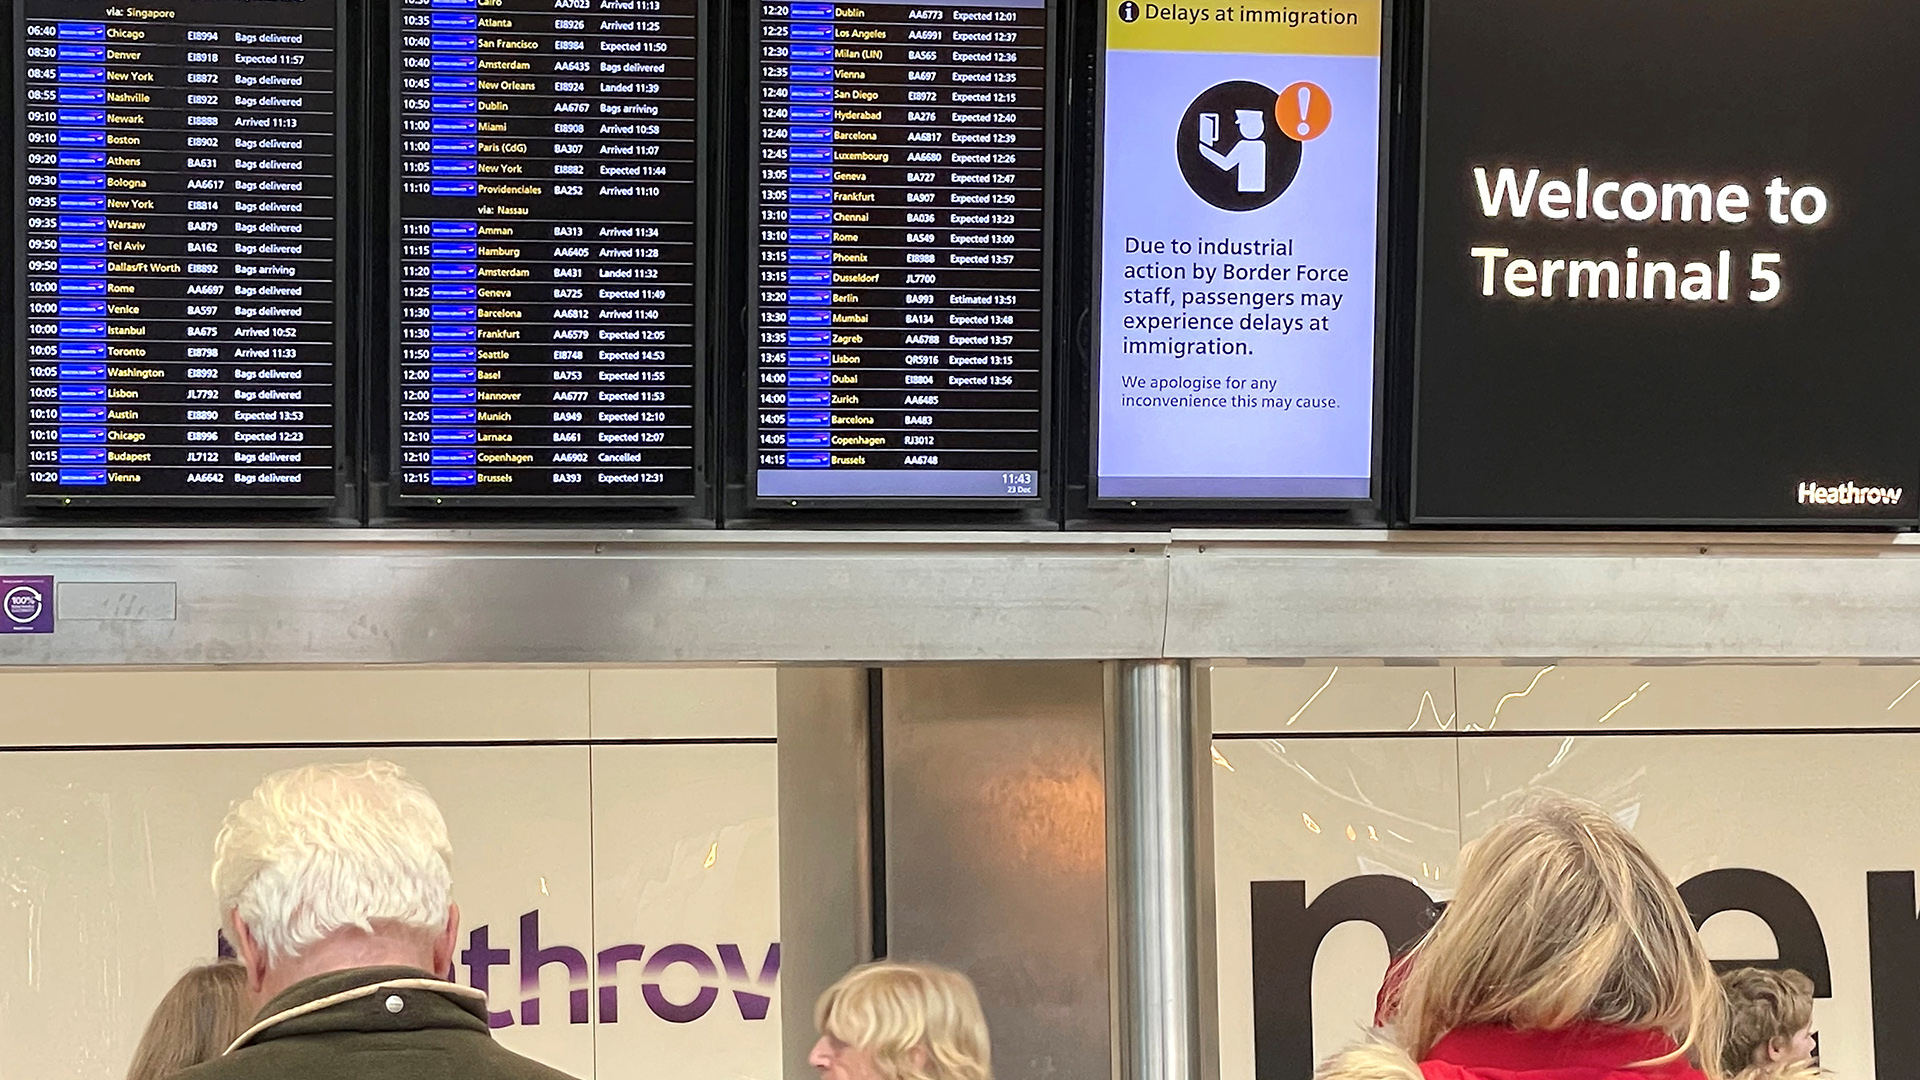 Menschen stehen vor einer Anzeigetafel im Flughafen Heathrow, auf der ein Hinweis auf Streiks beim Flughafenpersonal steht. | REUTERS